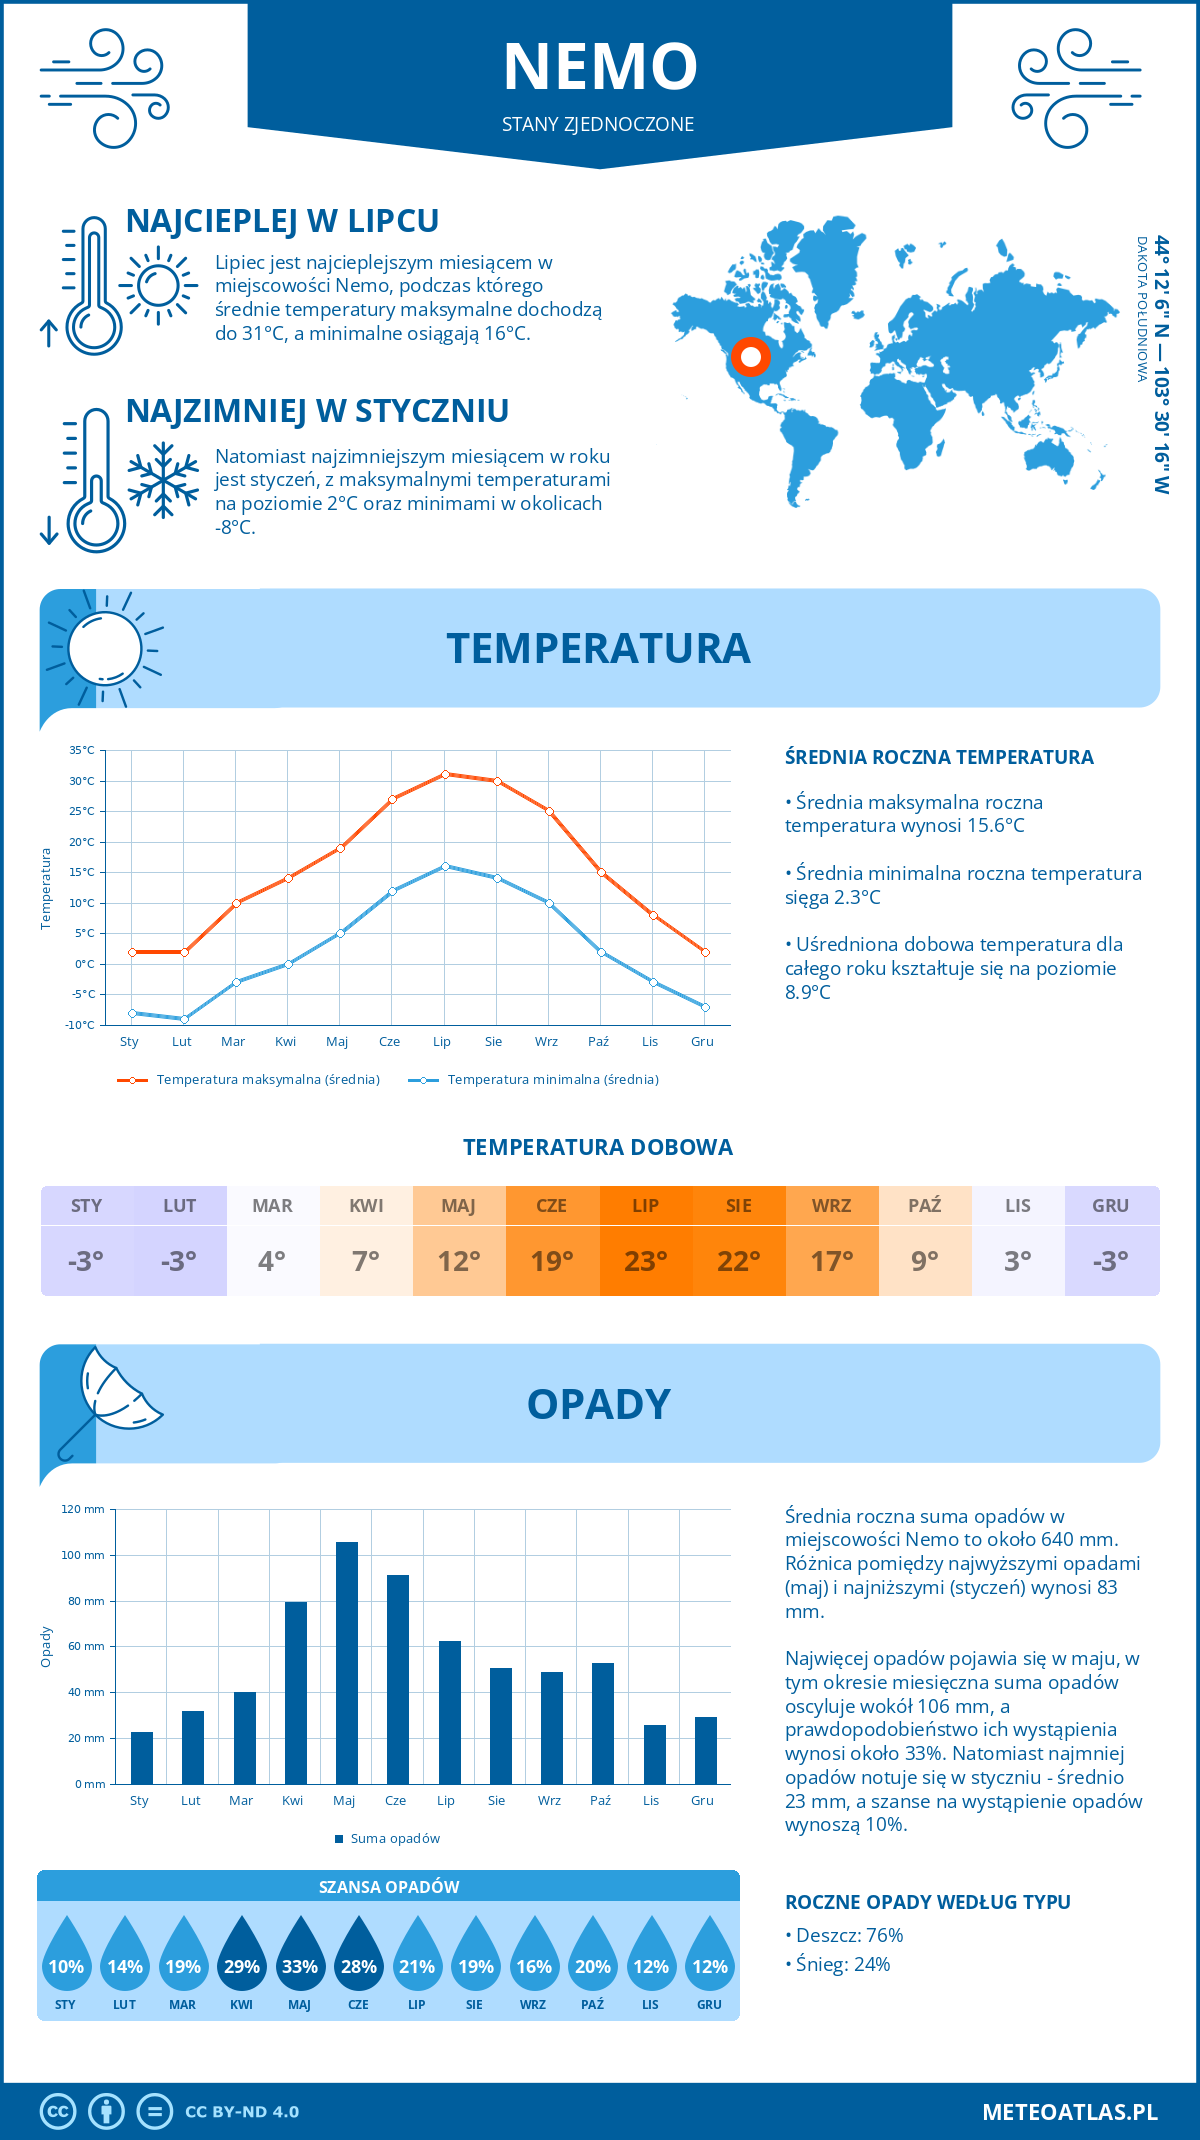 Pogoda Nemo (Stany Zjednoczone). Temperatura oraz opady.